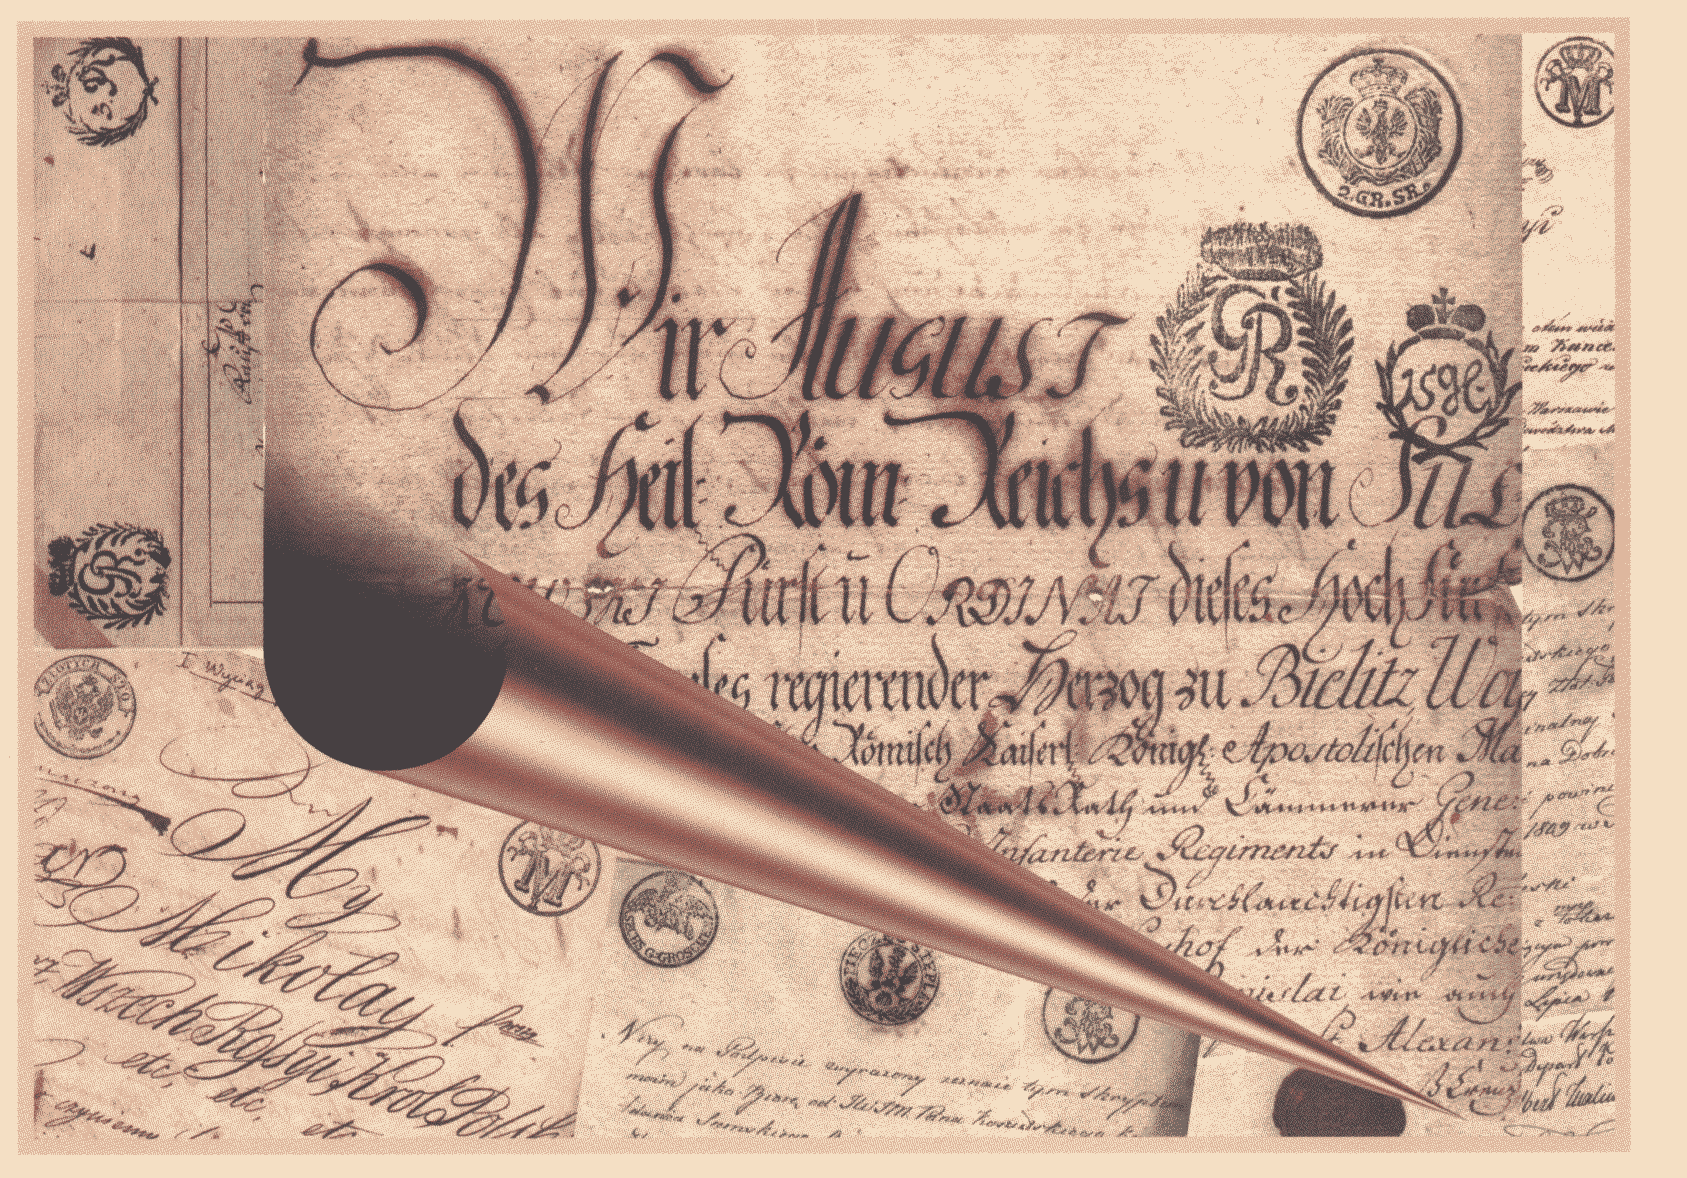 Dokument z sygnet lokaln Rydzyna z 1782 roku (z kolekcji Wadysawa ugowskiego)